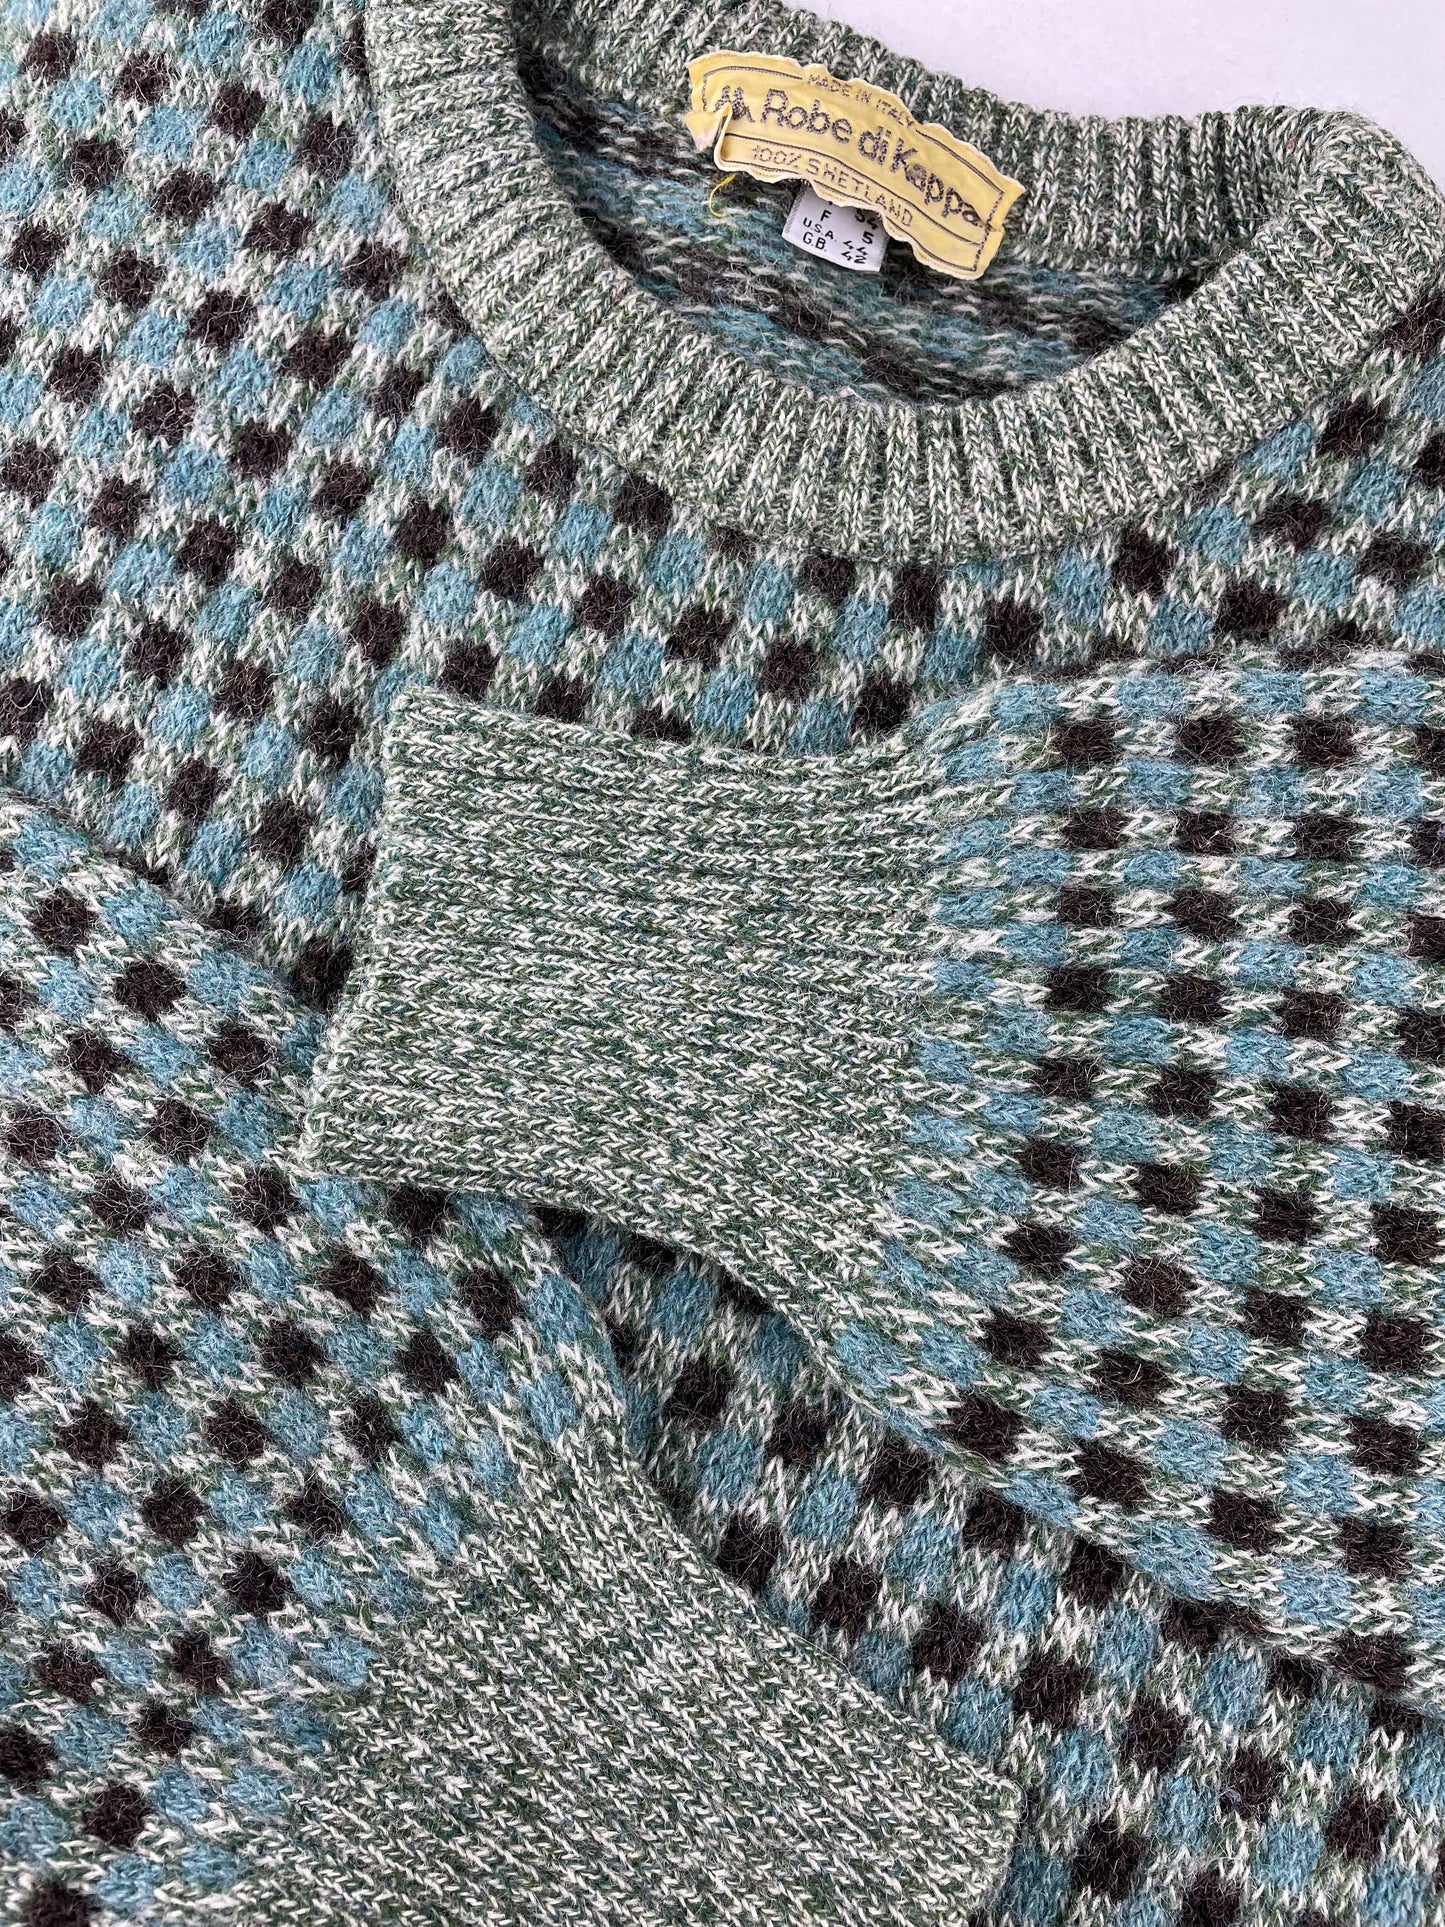 80s Kappa Knit Sweater Green L